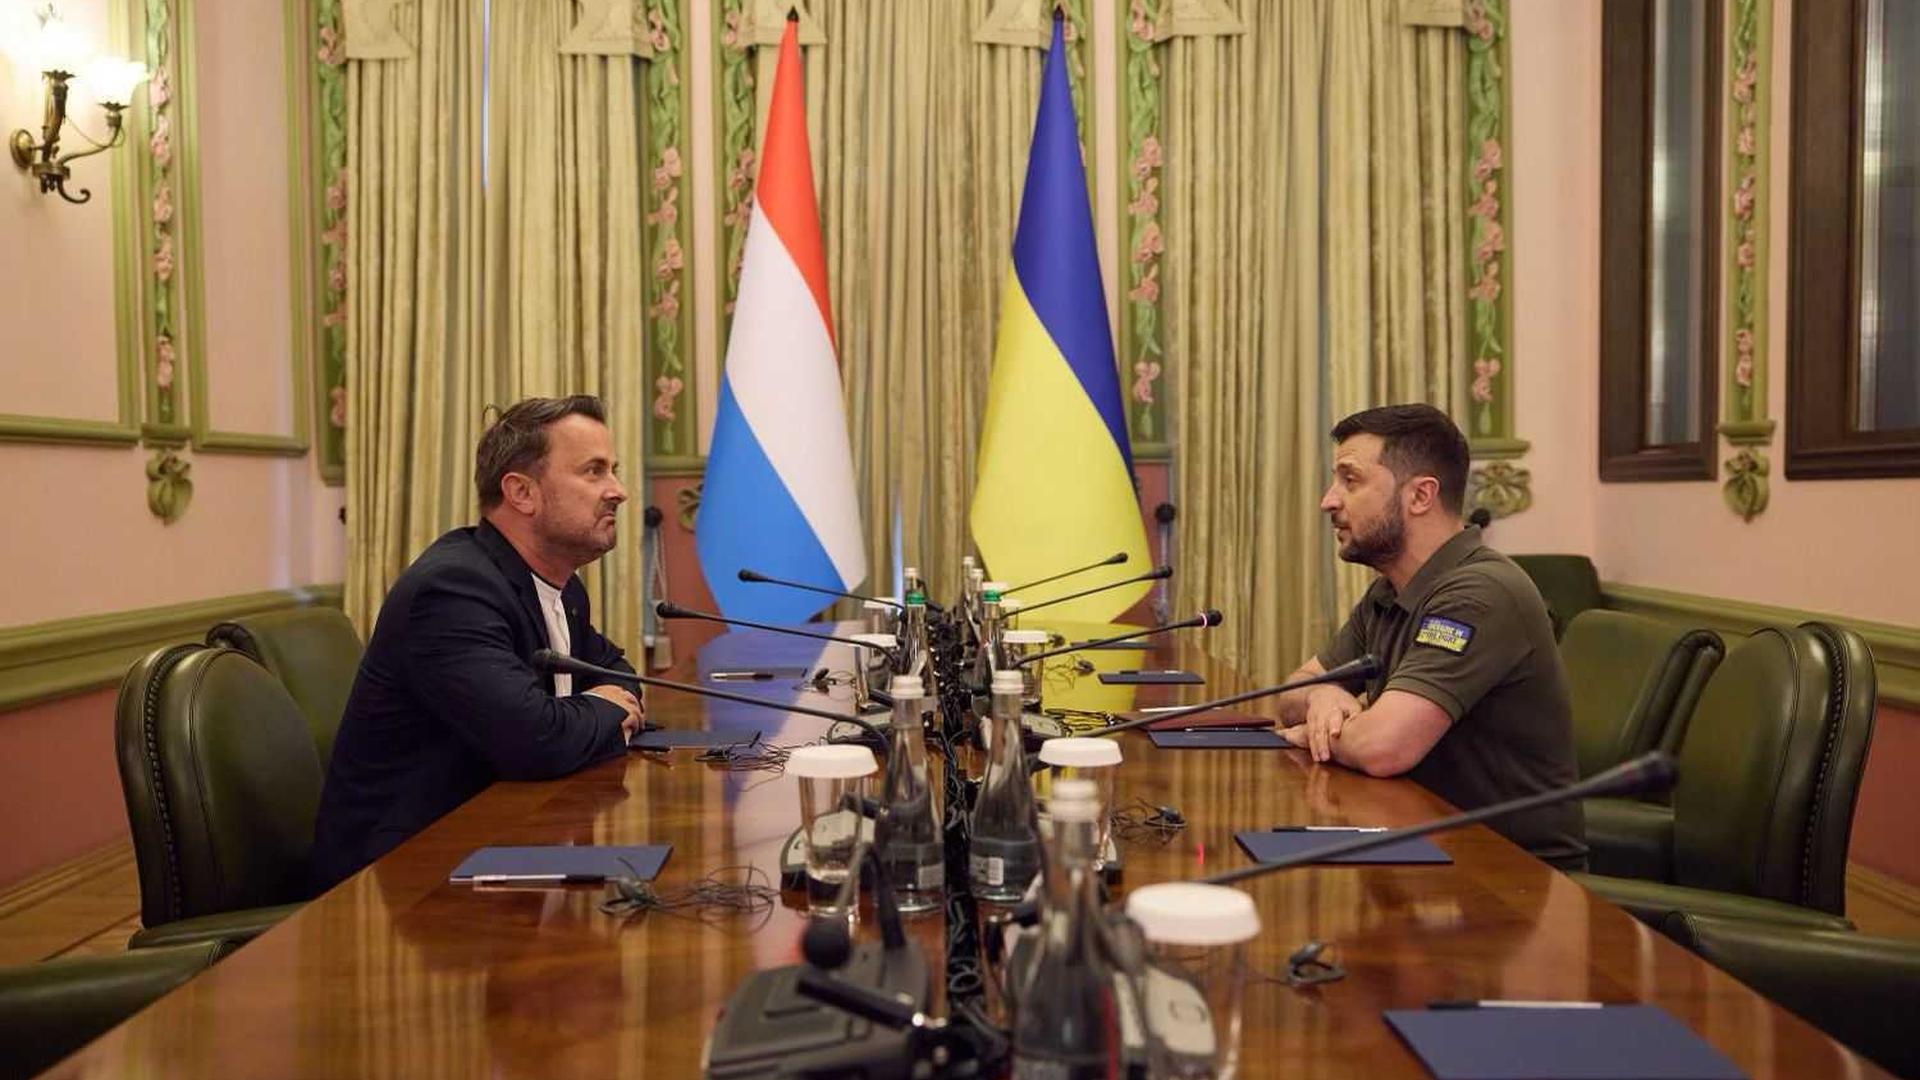 Luxembourg Prime Minister Xavier Bettel meeting Ukraine President Volodymyr Zelensky in Kyiv last Tuesday